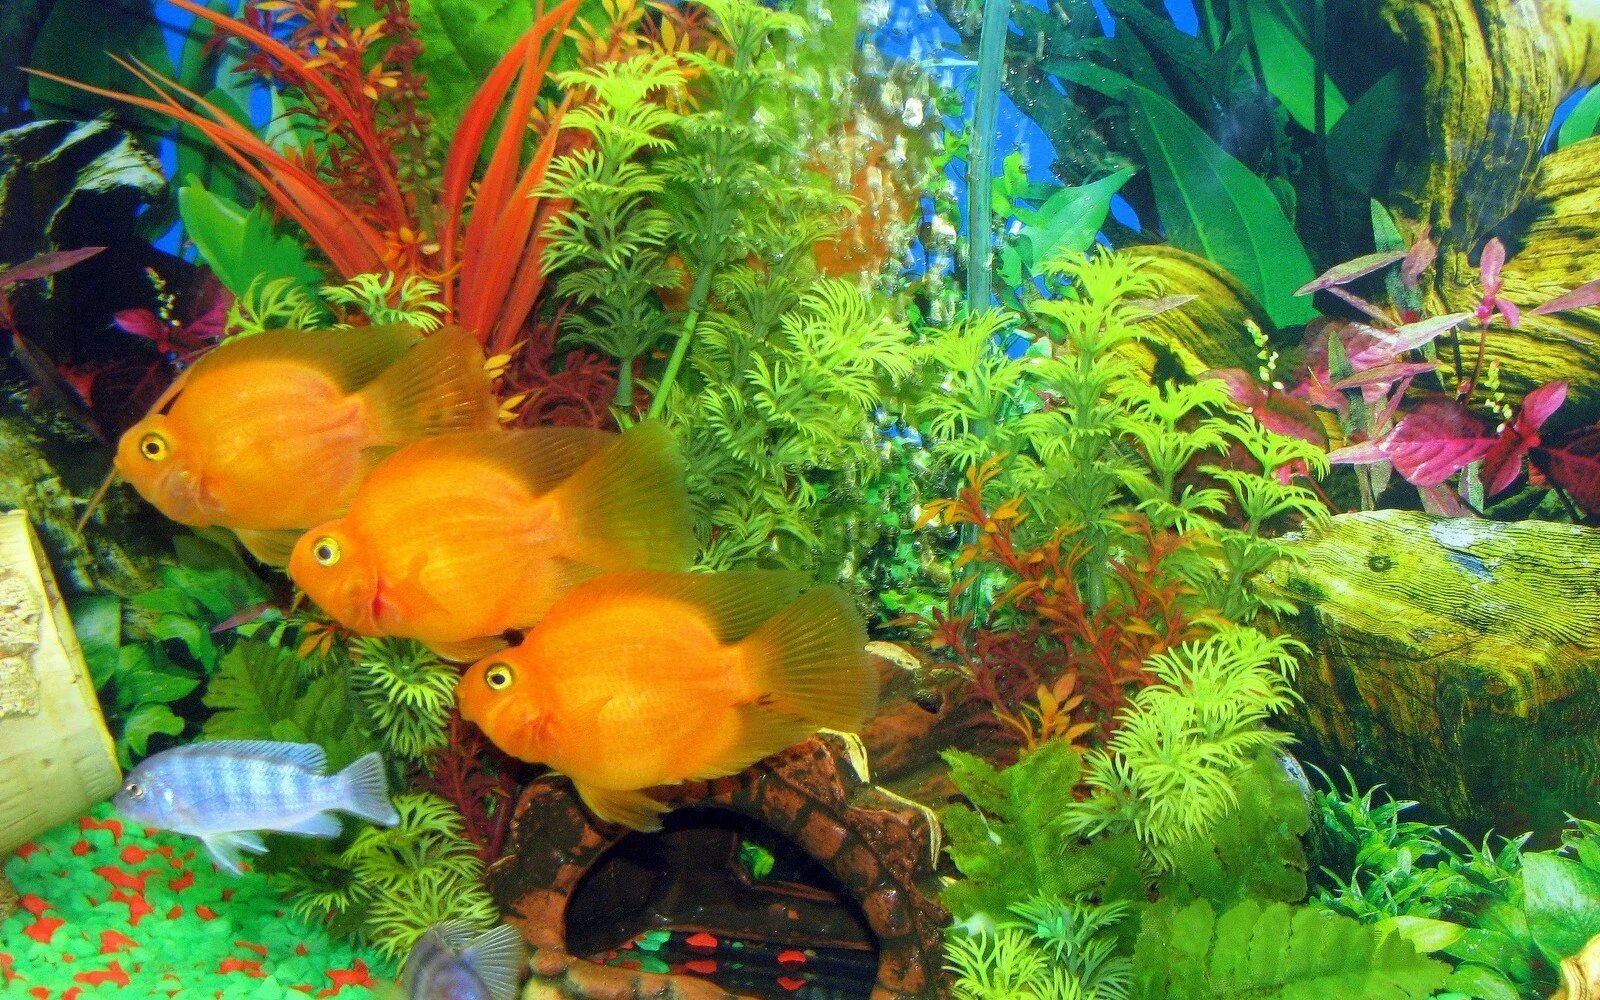 В аквариуме было 36 рыбок. Рыбки для аквариума. Красивые рыбки для аквариума. Аквариумные рыбки в аквариуме. Красивый аквариум с золотыми рыбками.